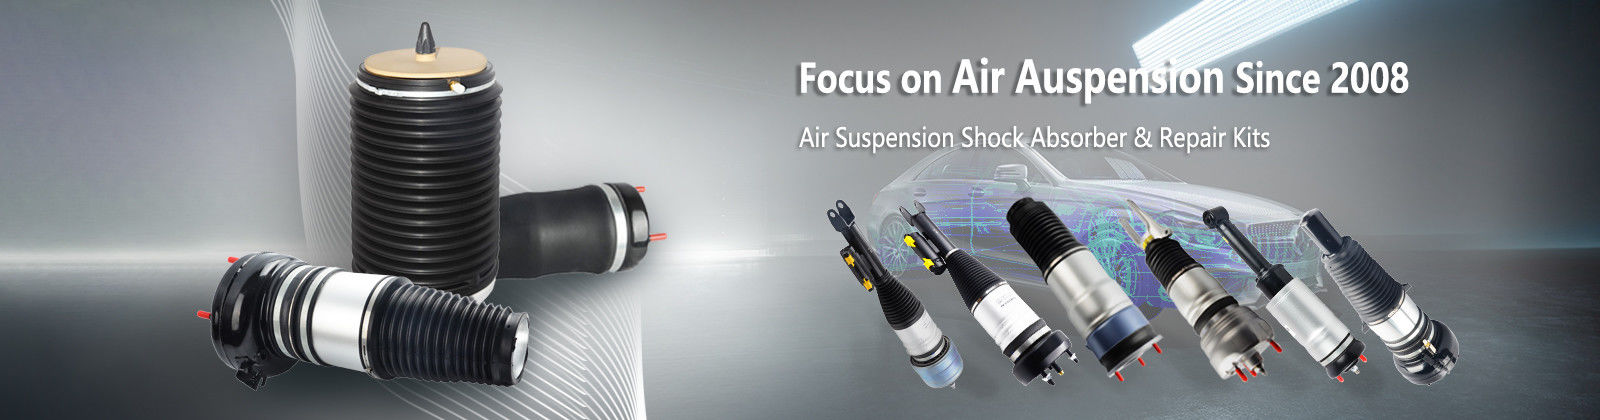 Air Suspension Shock